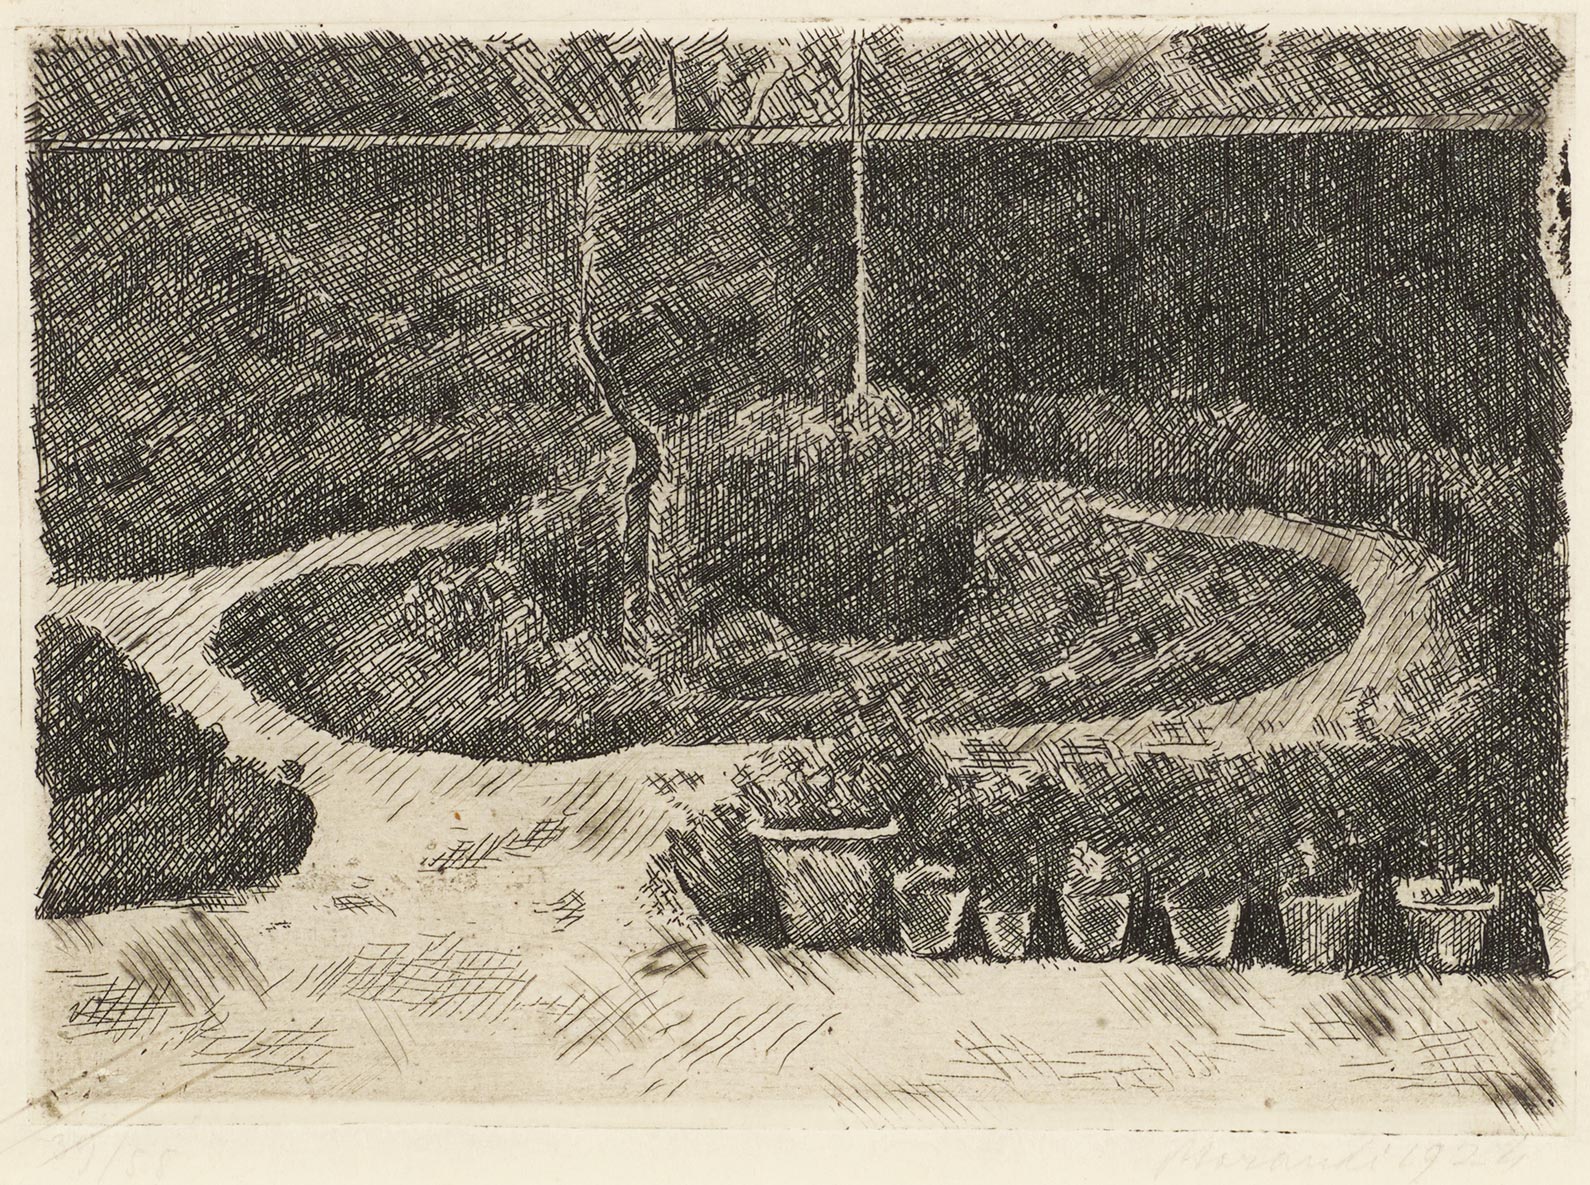 Giorgio Morandi, The Garden at Via Fondazza, 1924